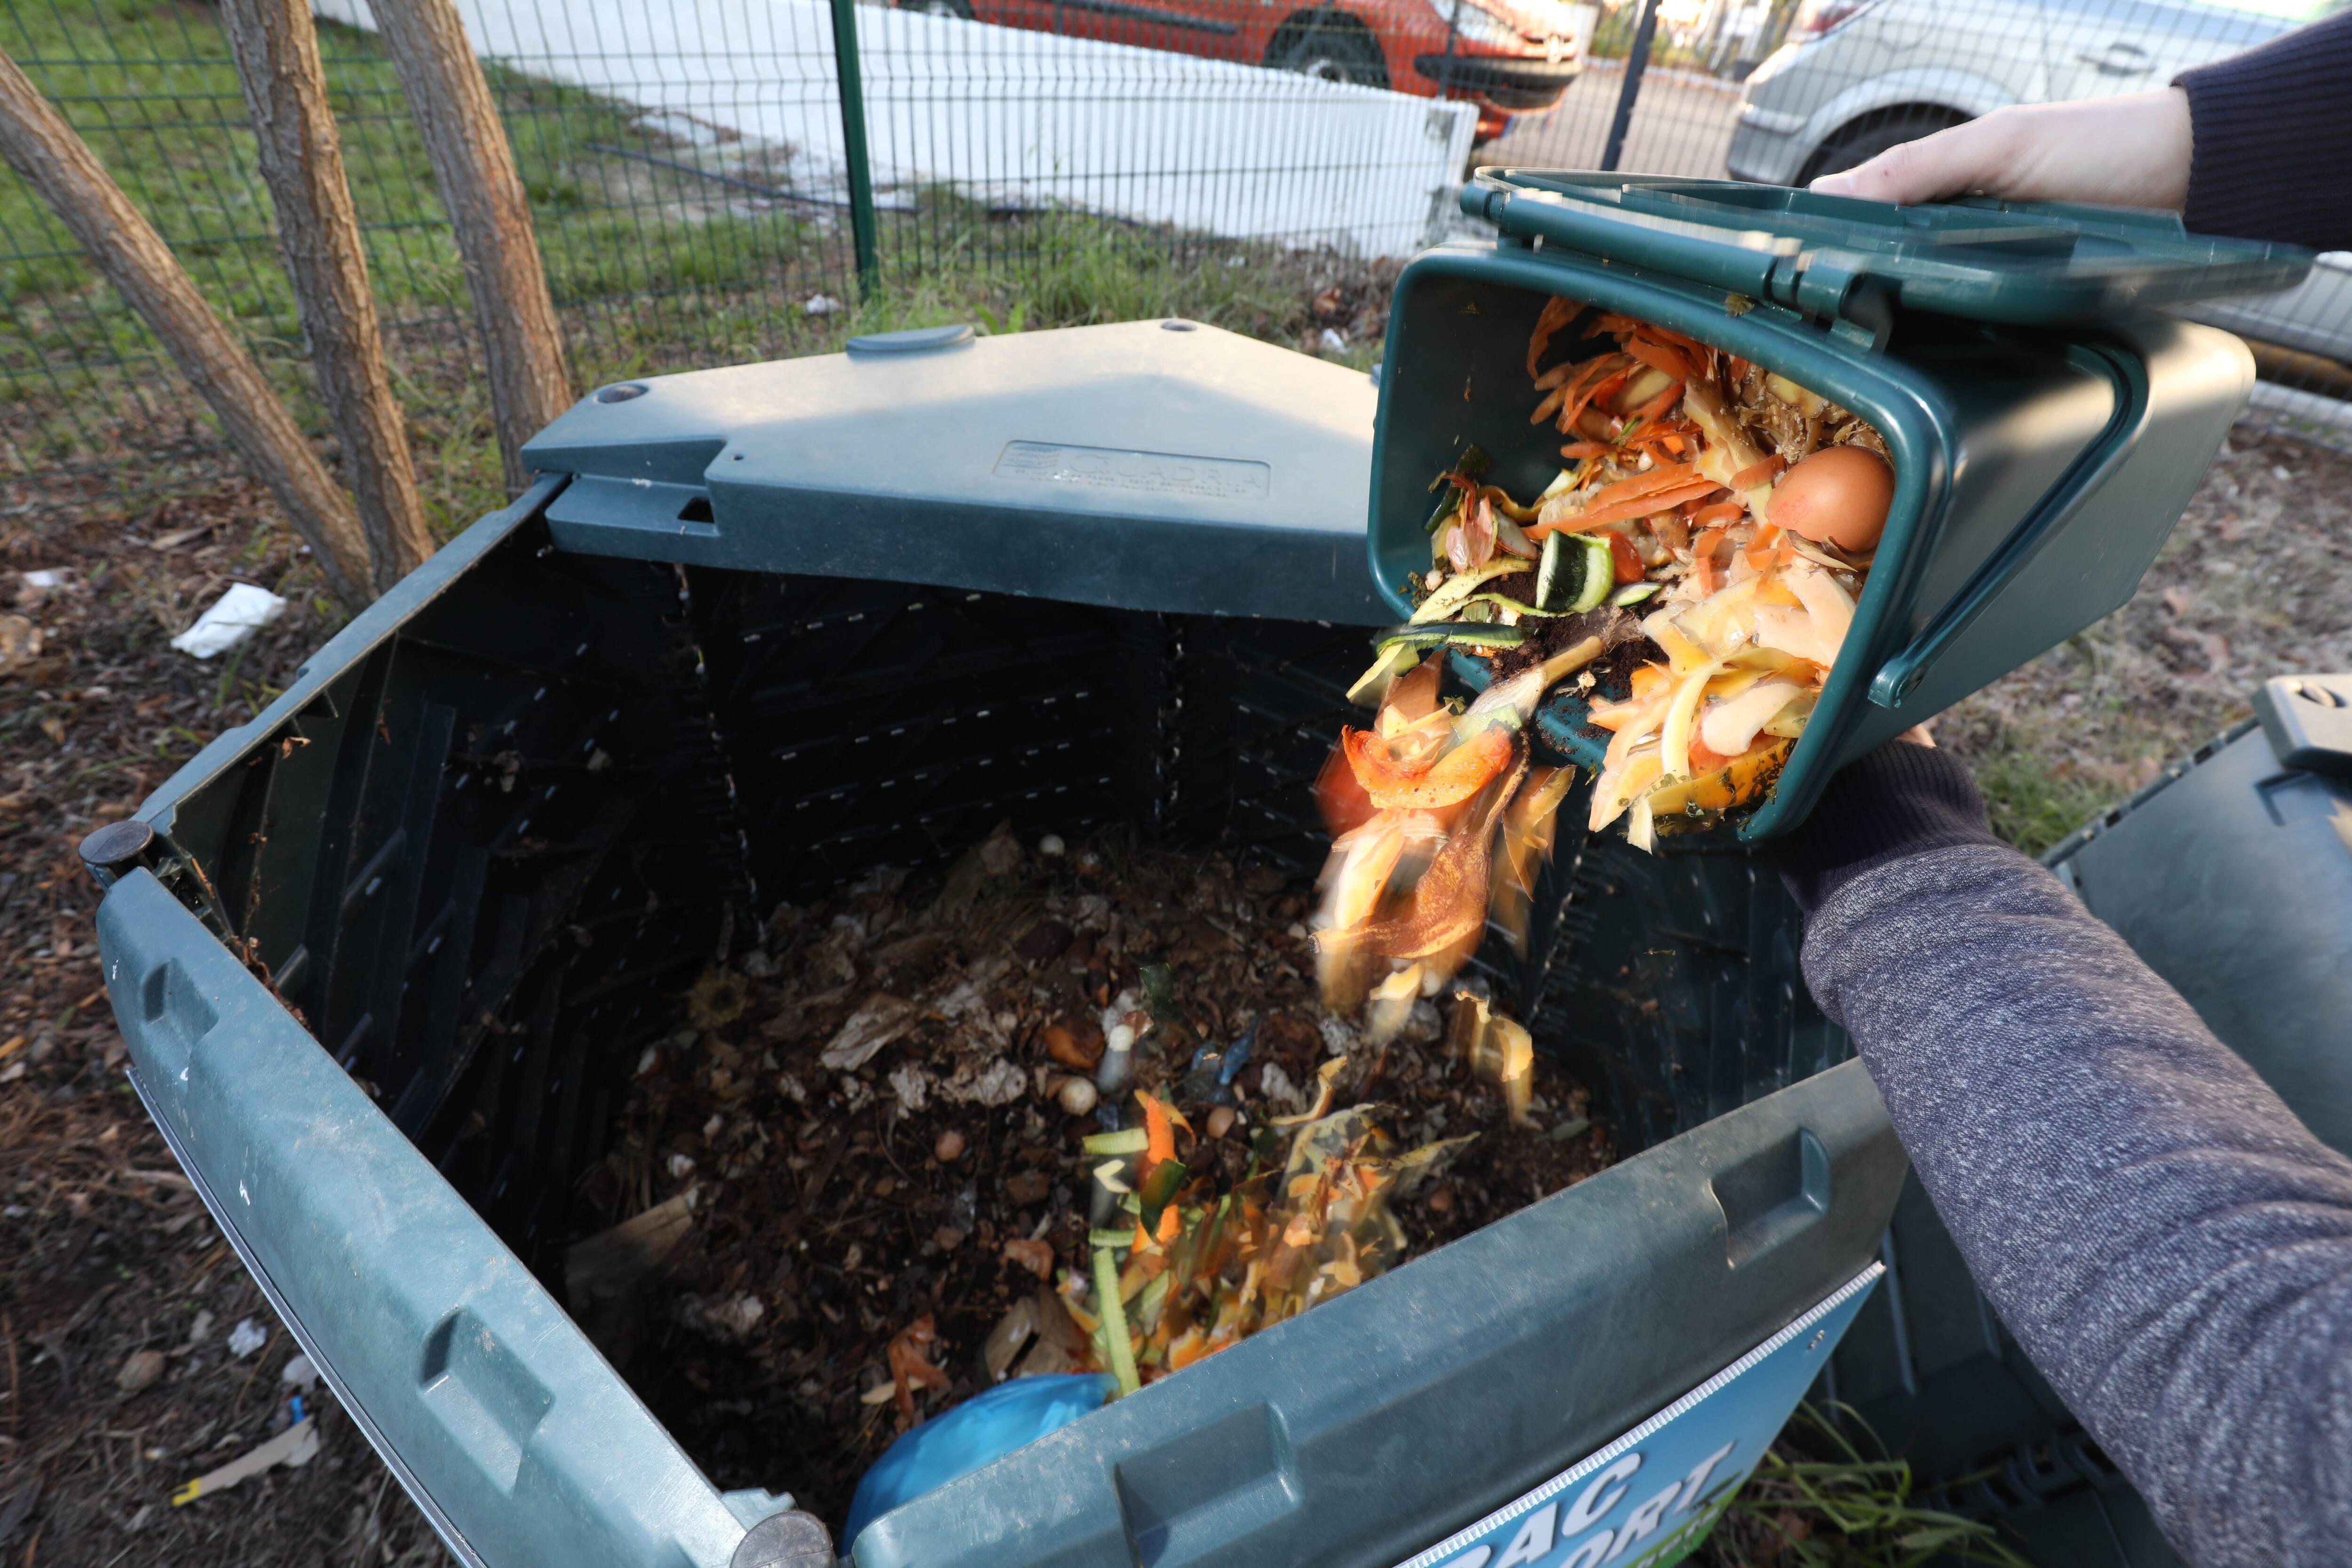 Le compostage-Environnement-Traitement des déchets-Vivre au quotidien